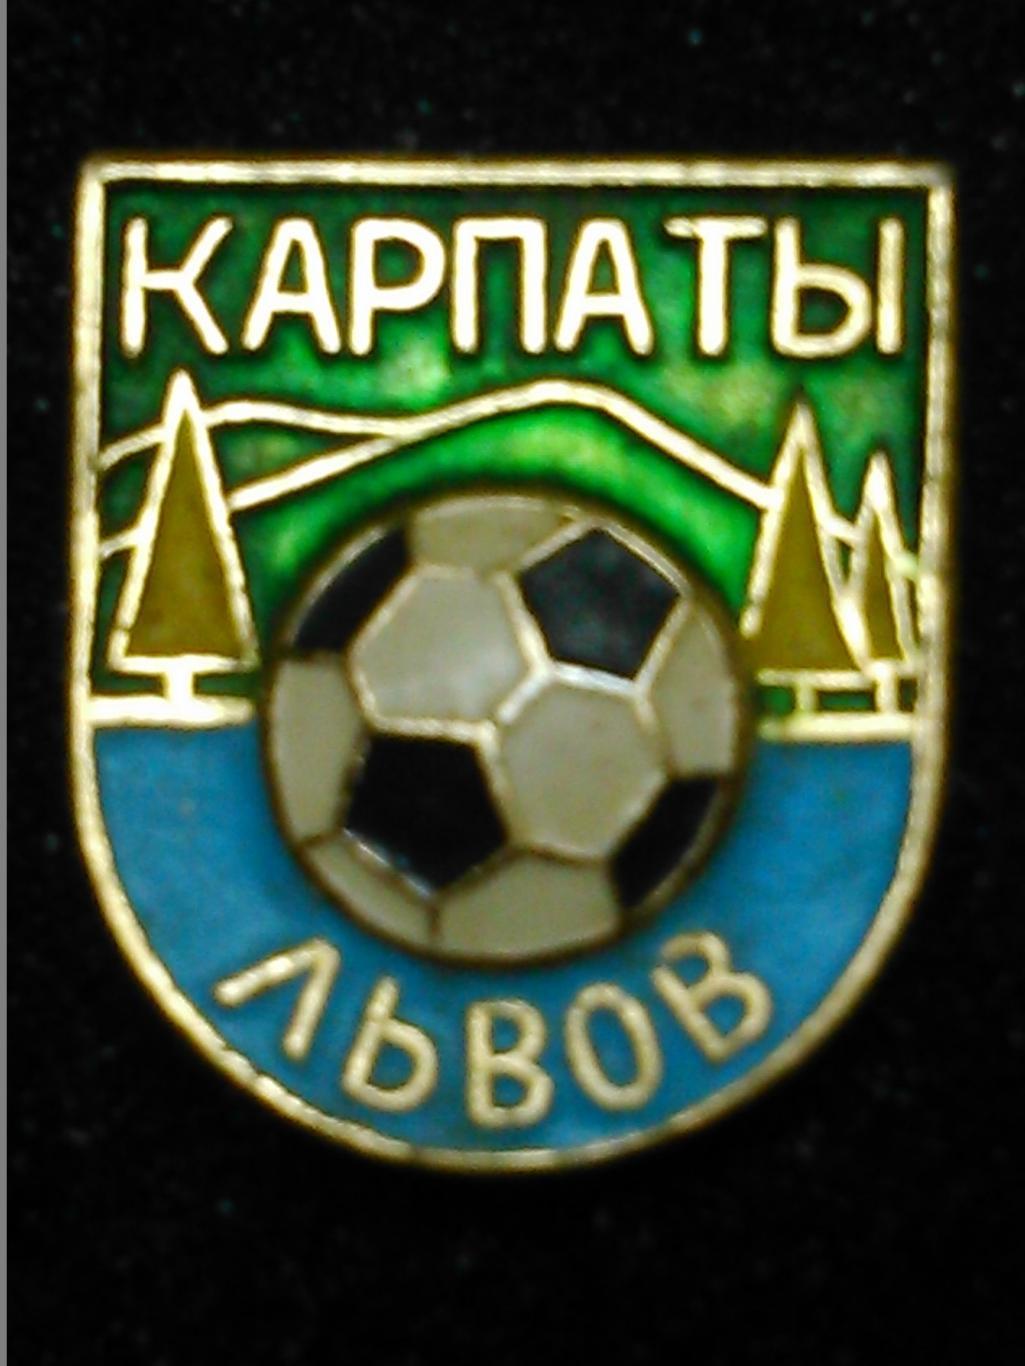 Футбольн значок. 26.4. КАРПАТЫ Львов. Ukraine Footbal Badge. Оптом скидки 44%!